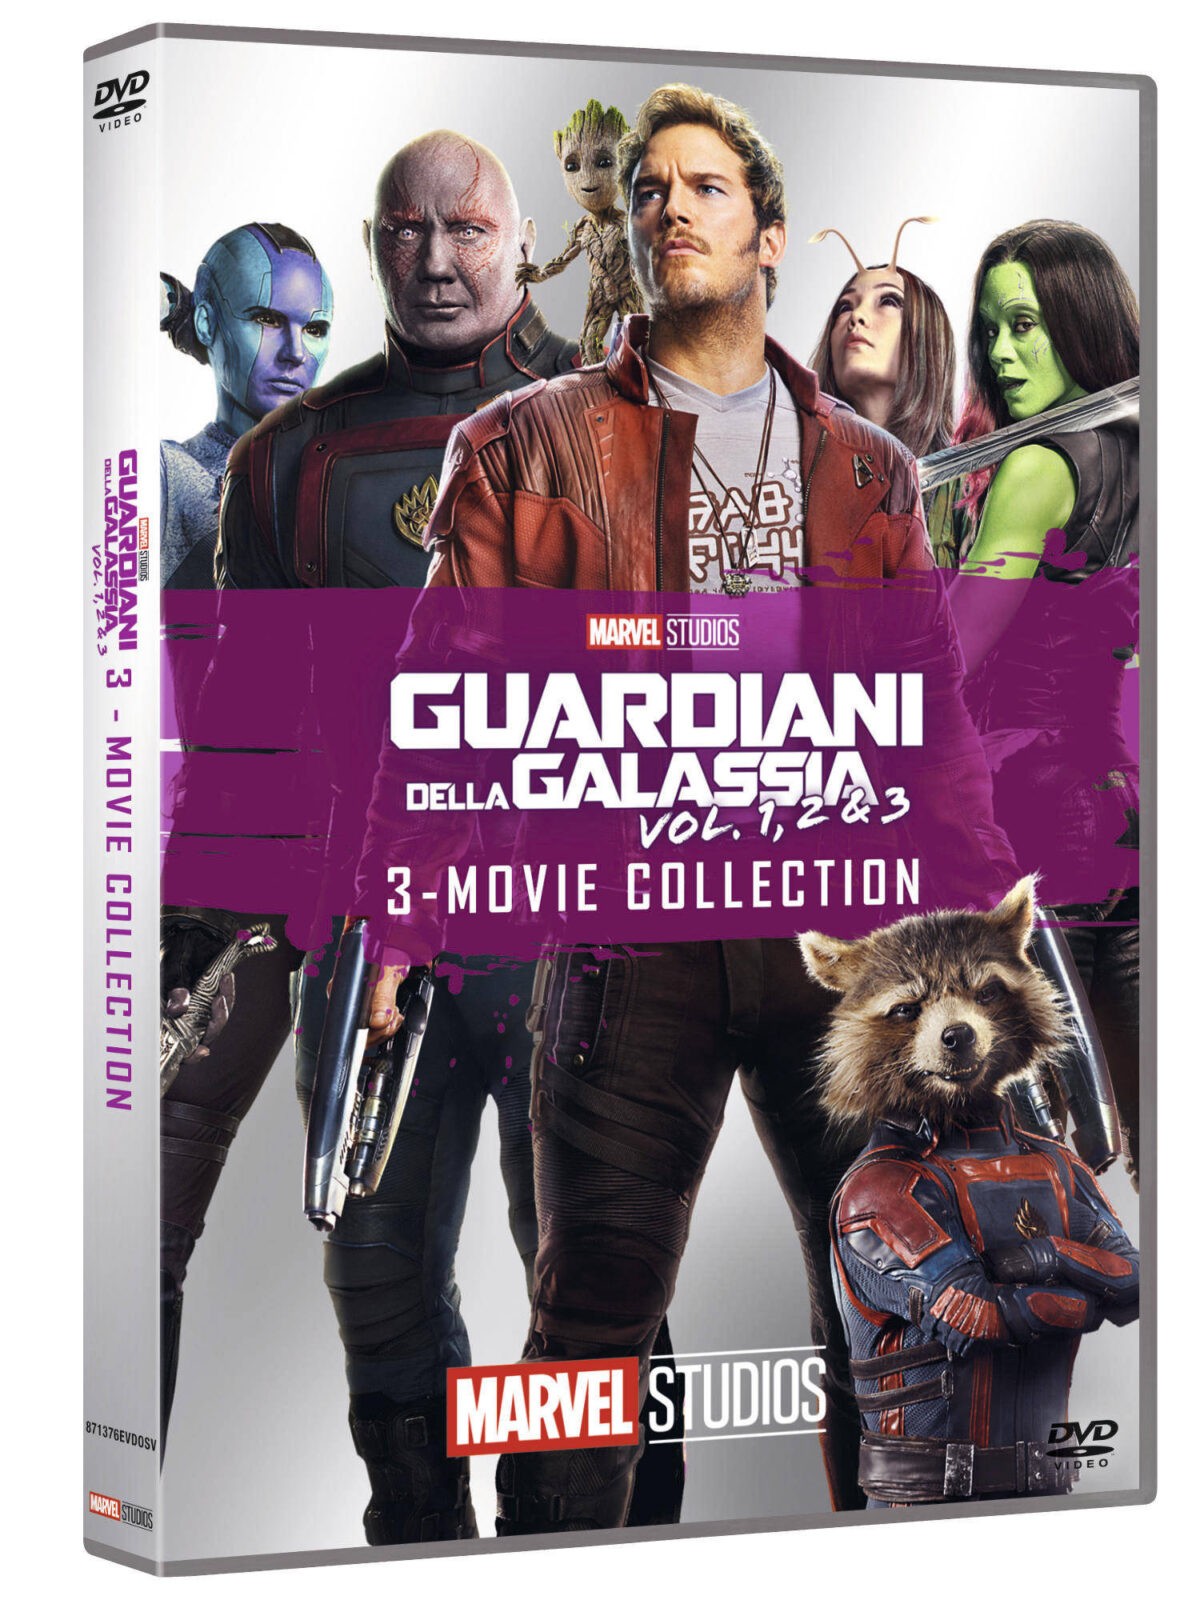 Guardiani della galassia_Volume 1 - 3_DVD